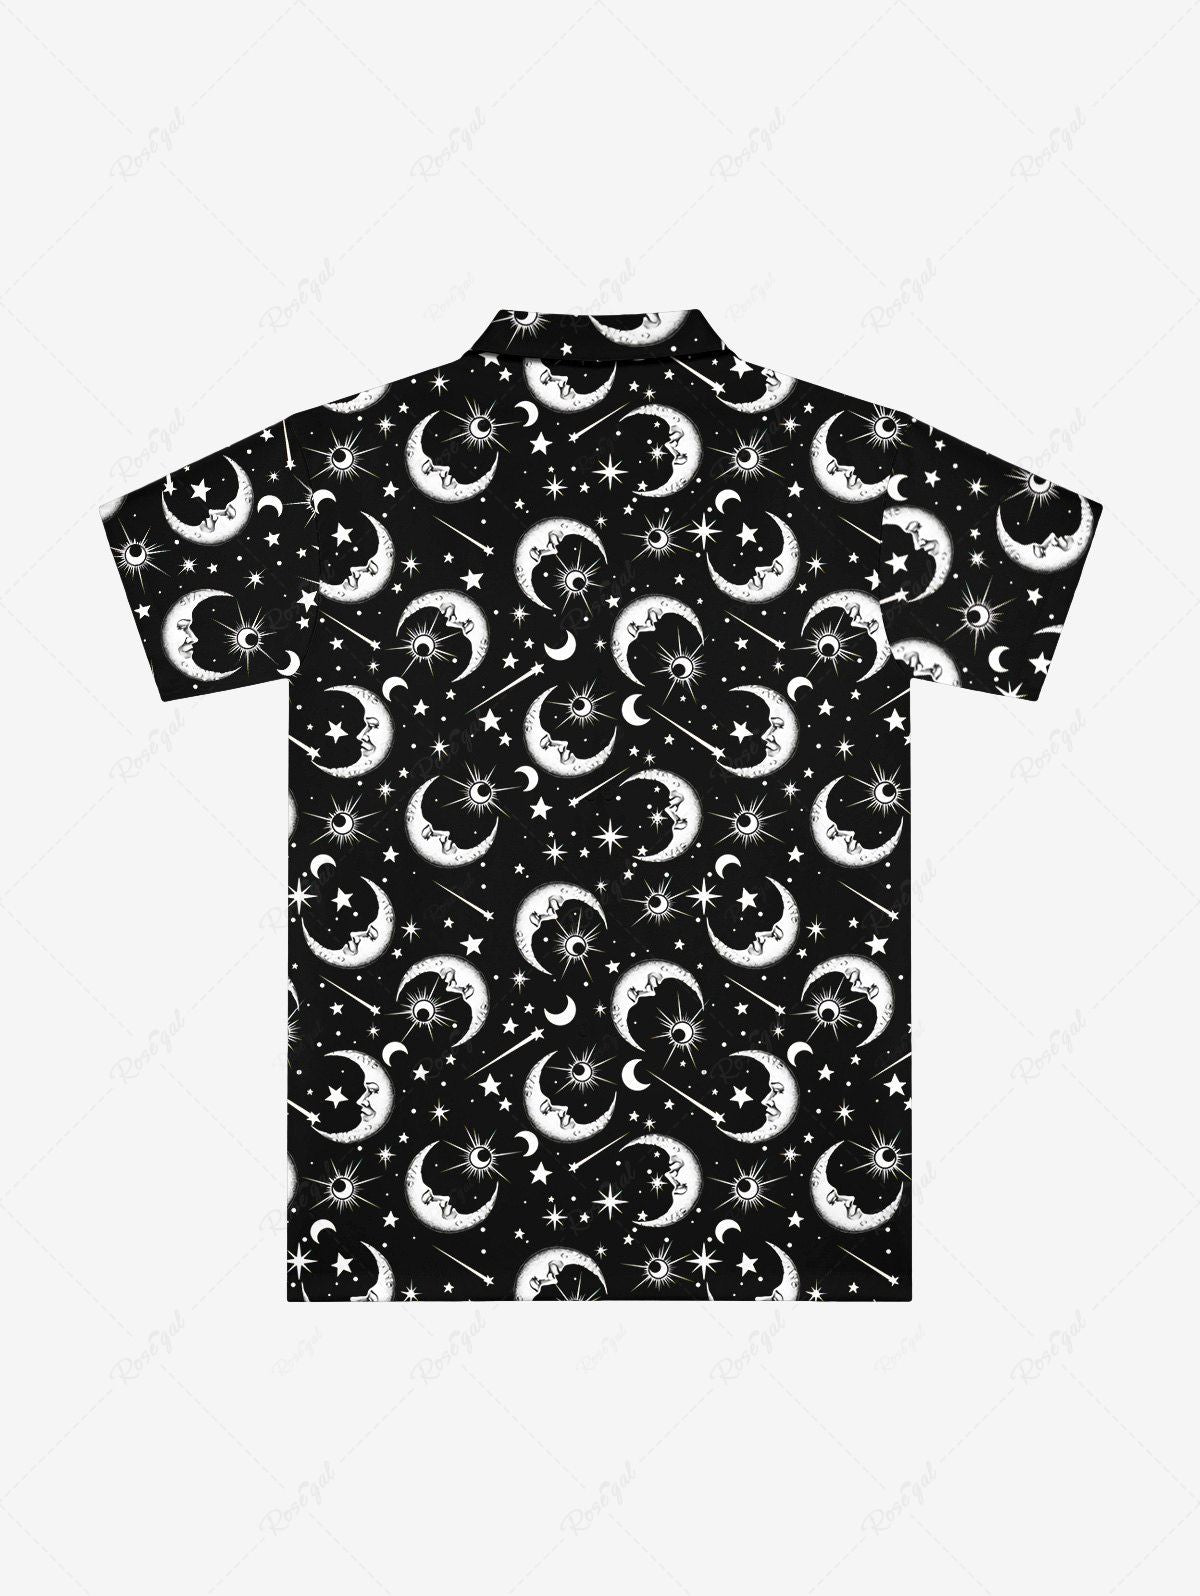 Gothic Galaxy Sun Moon Star Print Button Down Shirt For Men